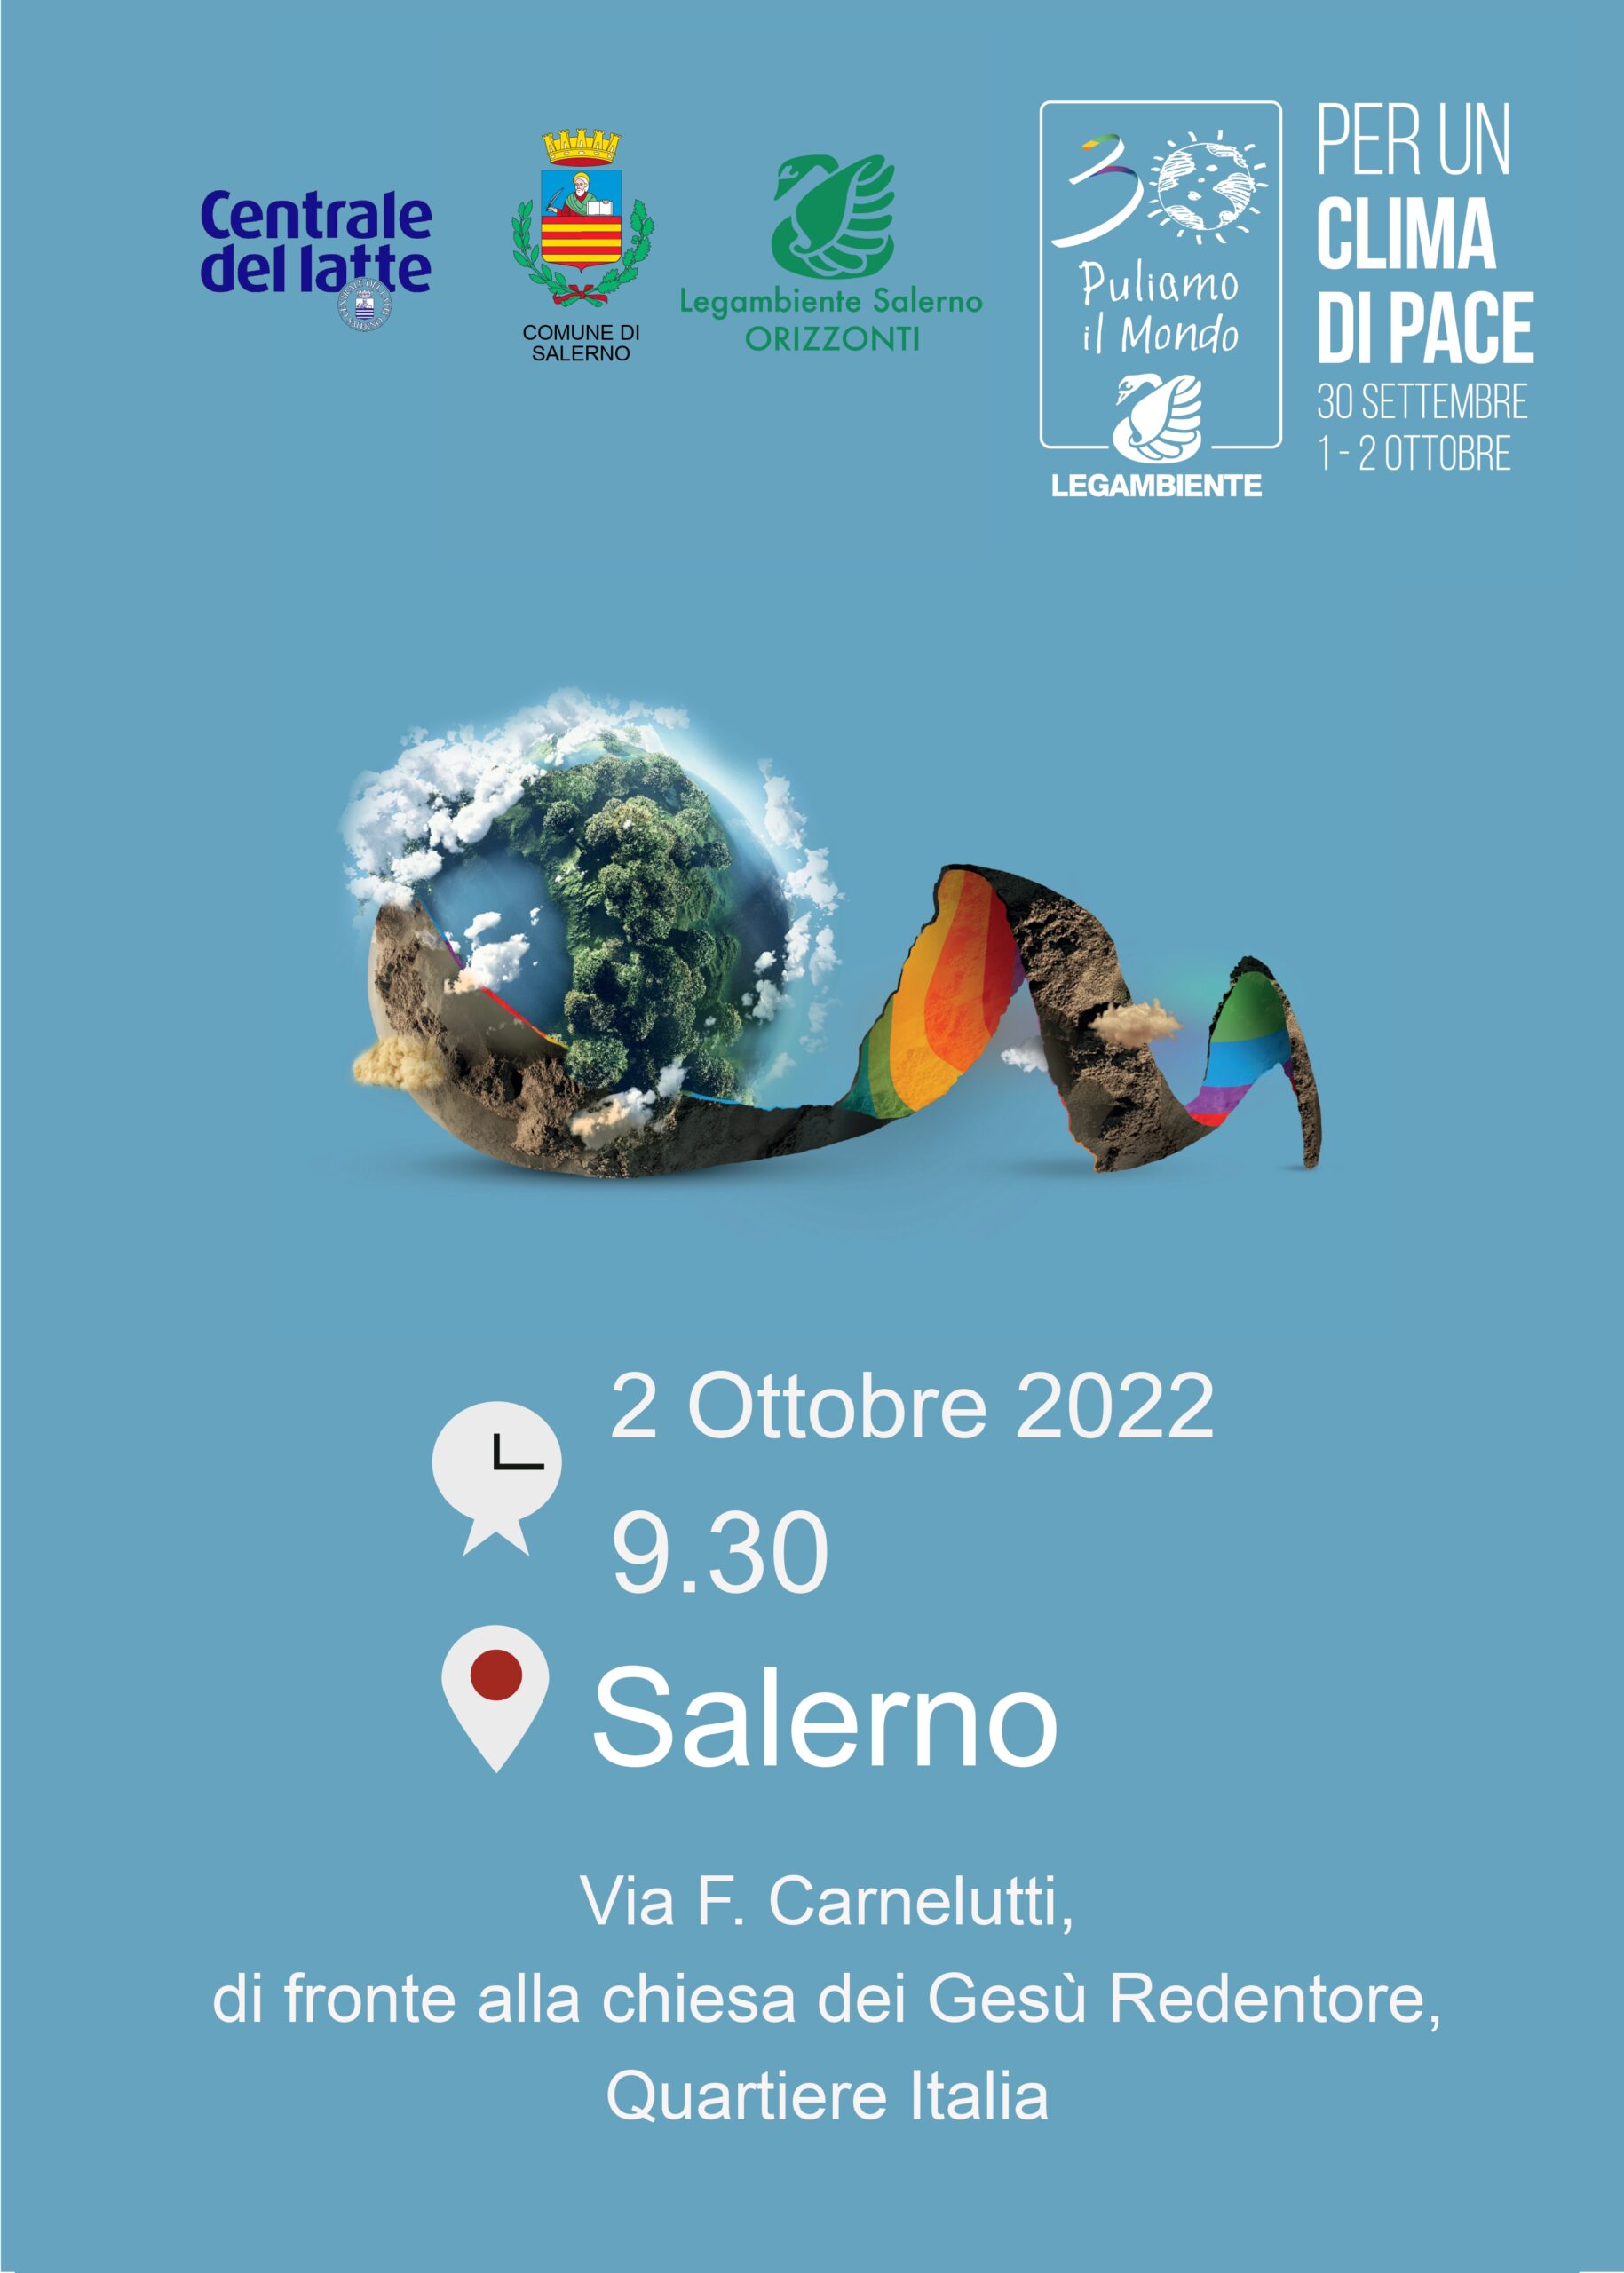 Salerno: Legambiente “Puliamo il Mondo per un clima di pace” 